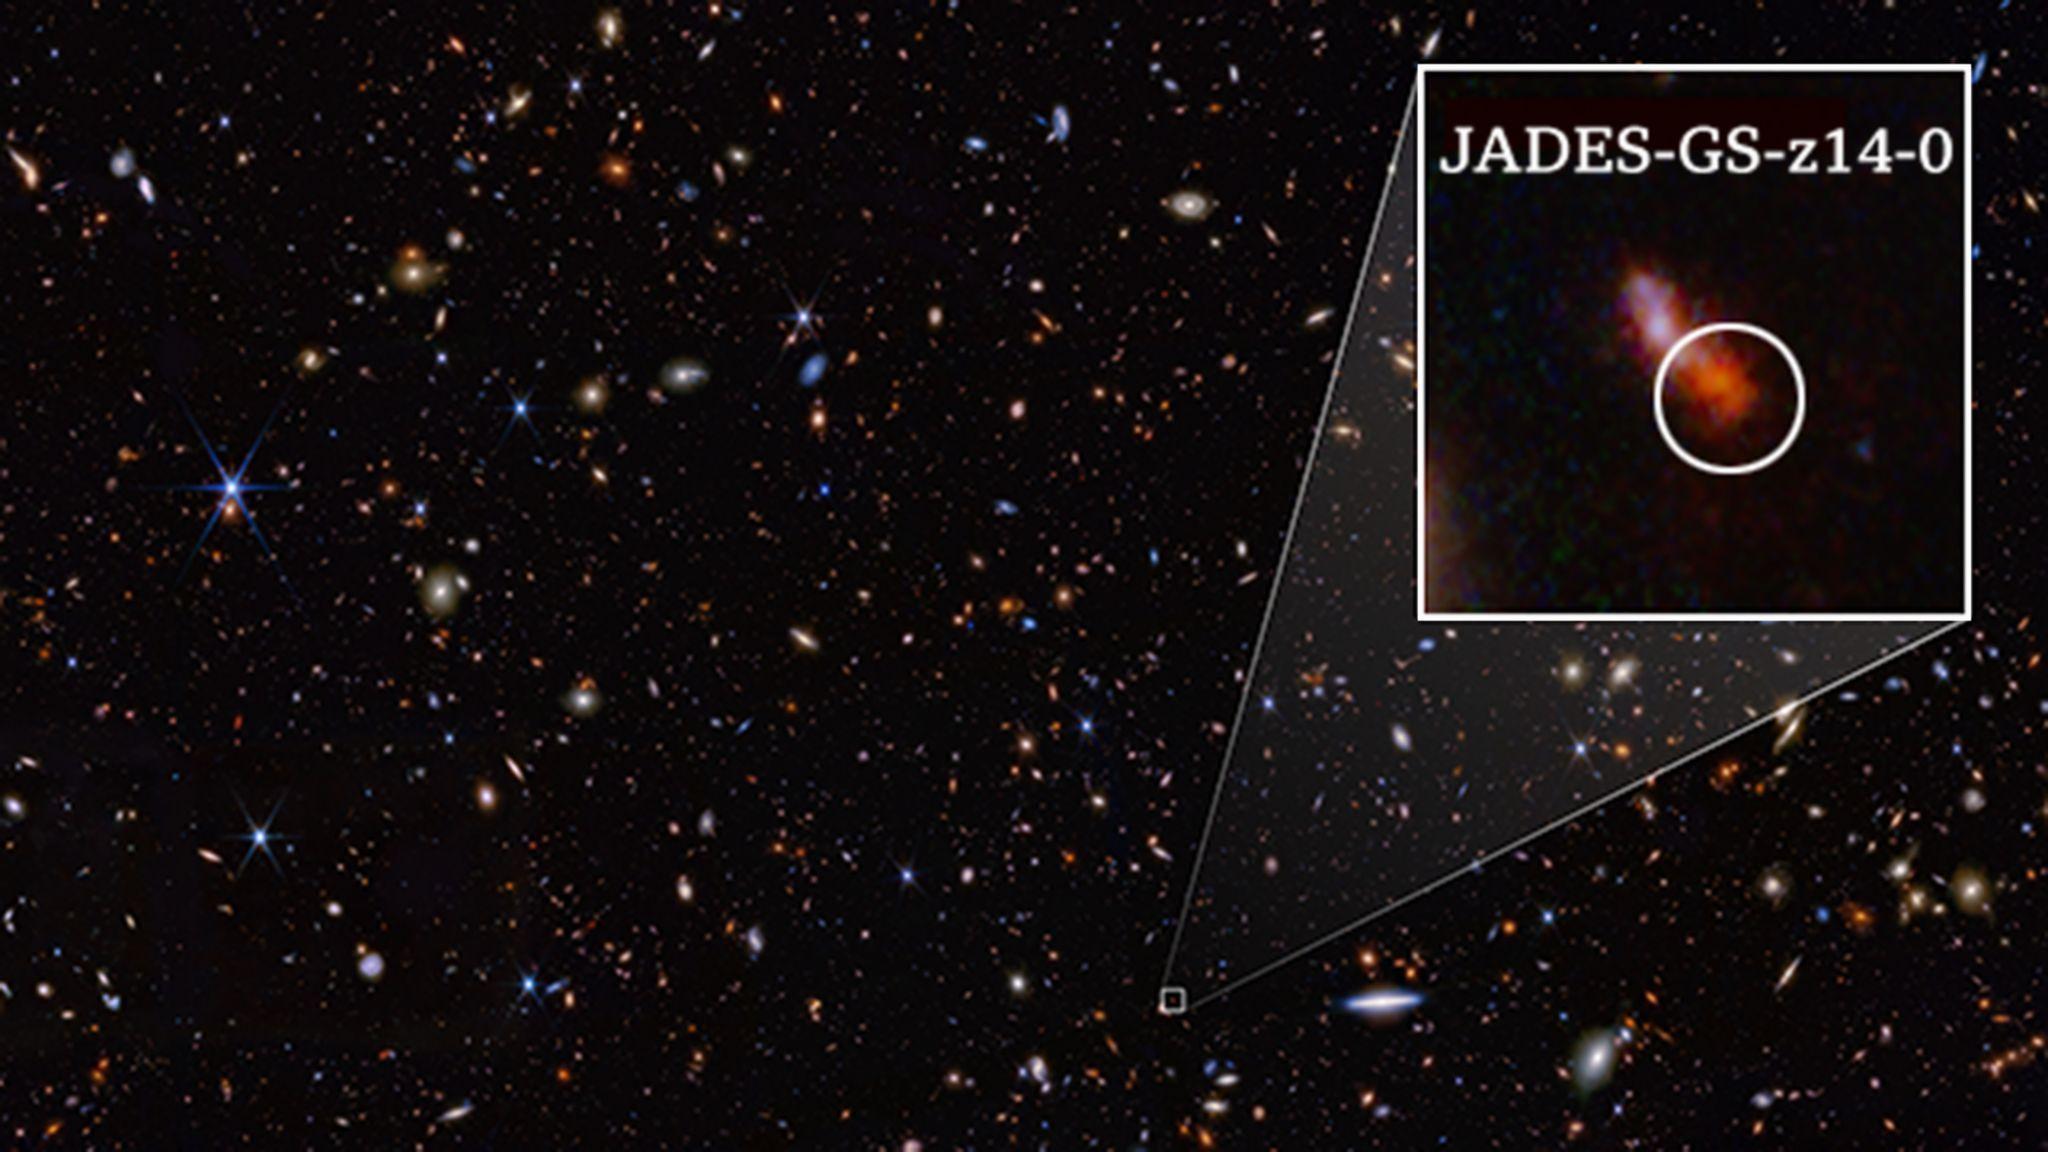 La galaxia JADES-GS-z14-0 detectada en lo más profundo del Universo